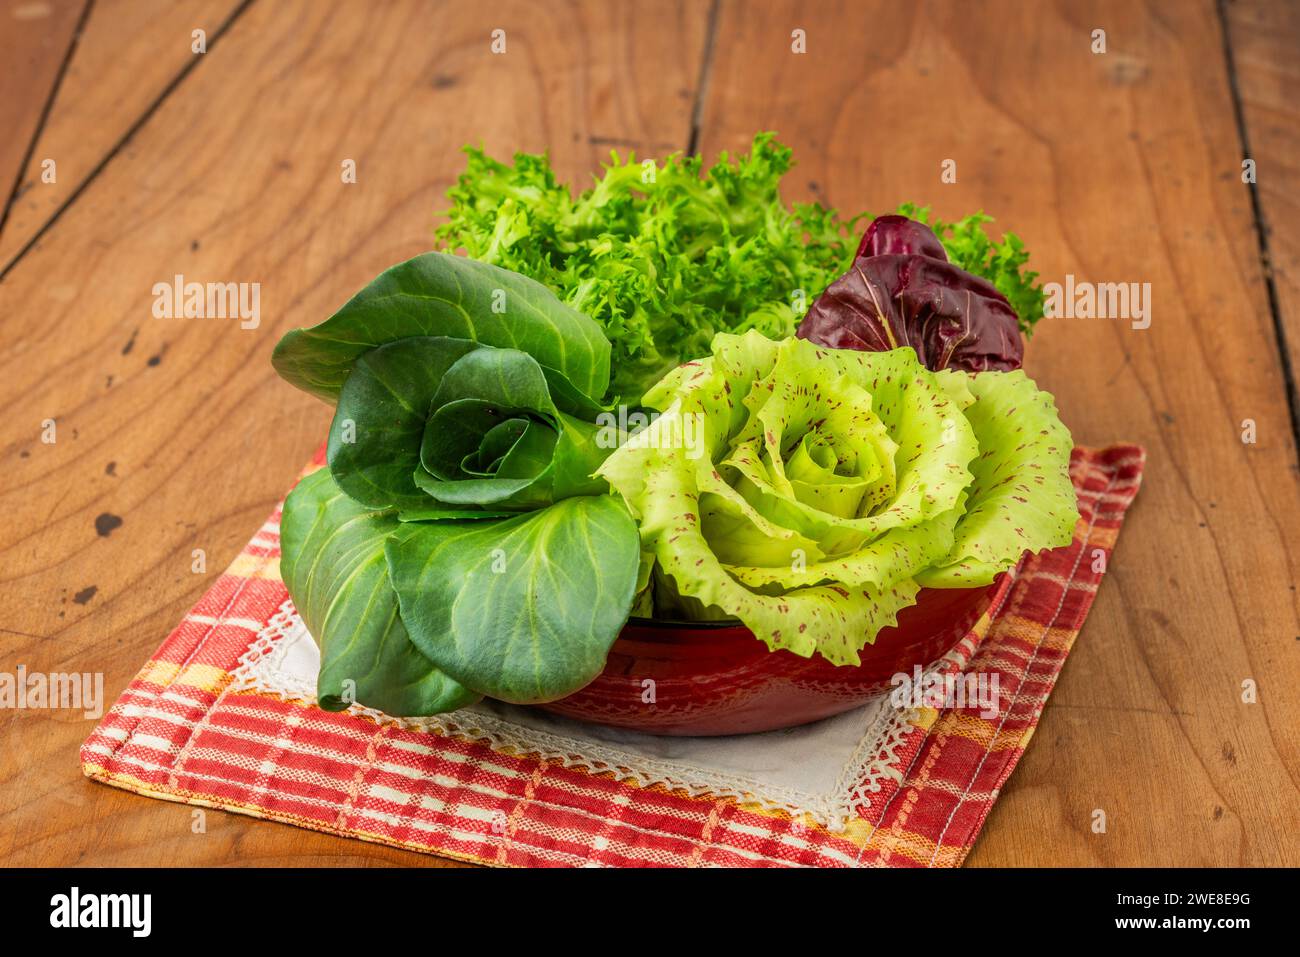 Quattro insalate in tazza su un antico tavolo in legno: Cicoria grumolo verde, radicchio di Chioggia, radicchio di Castelfranco e insalata riccia. Foto Stock